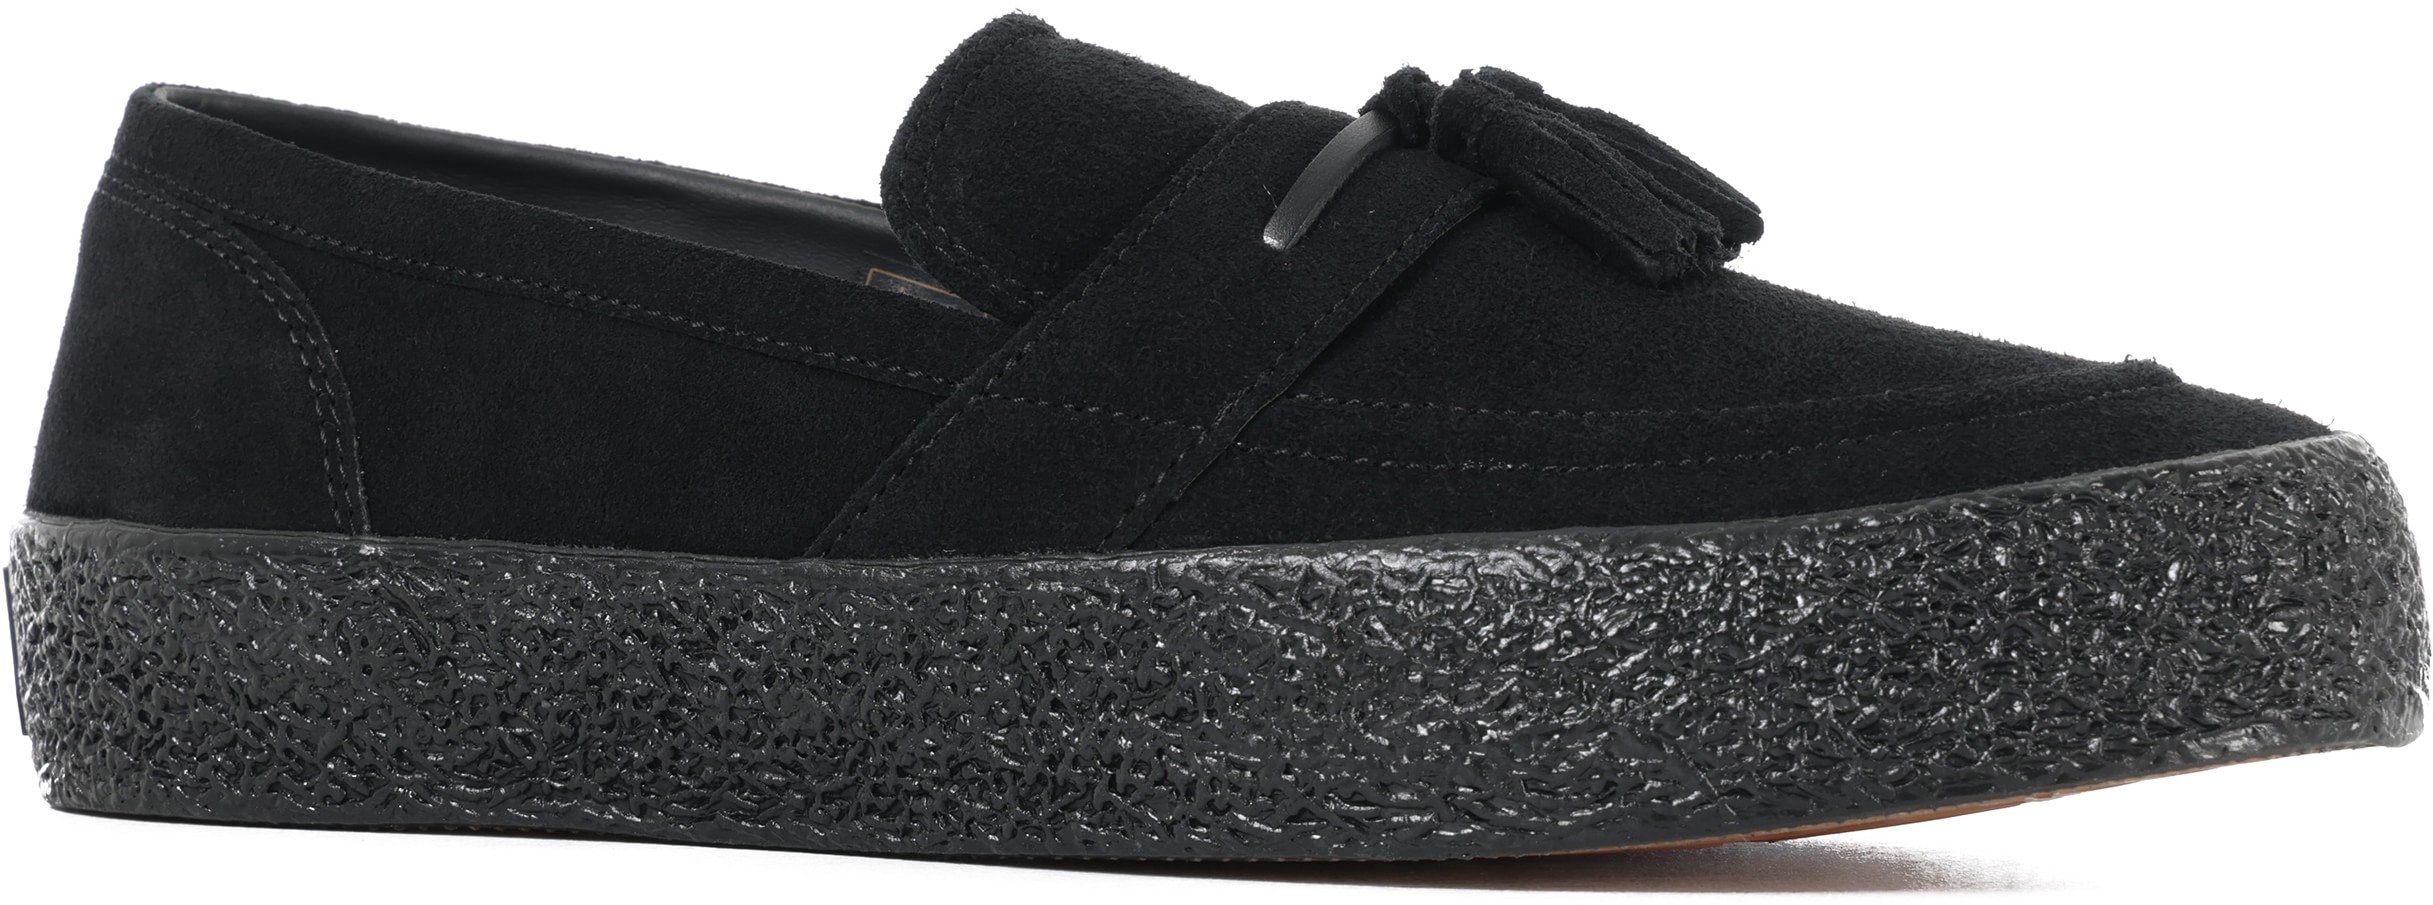 Last Resort AB VM005 - Loafer Skate Shoes - black/black | Tactics